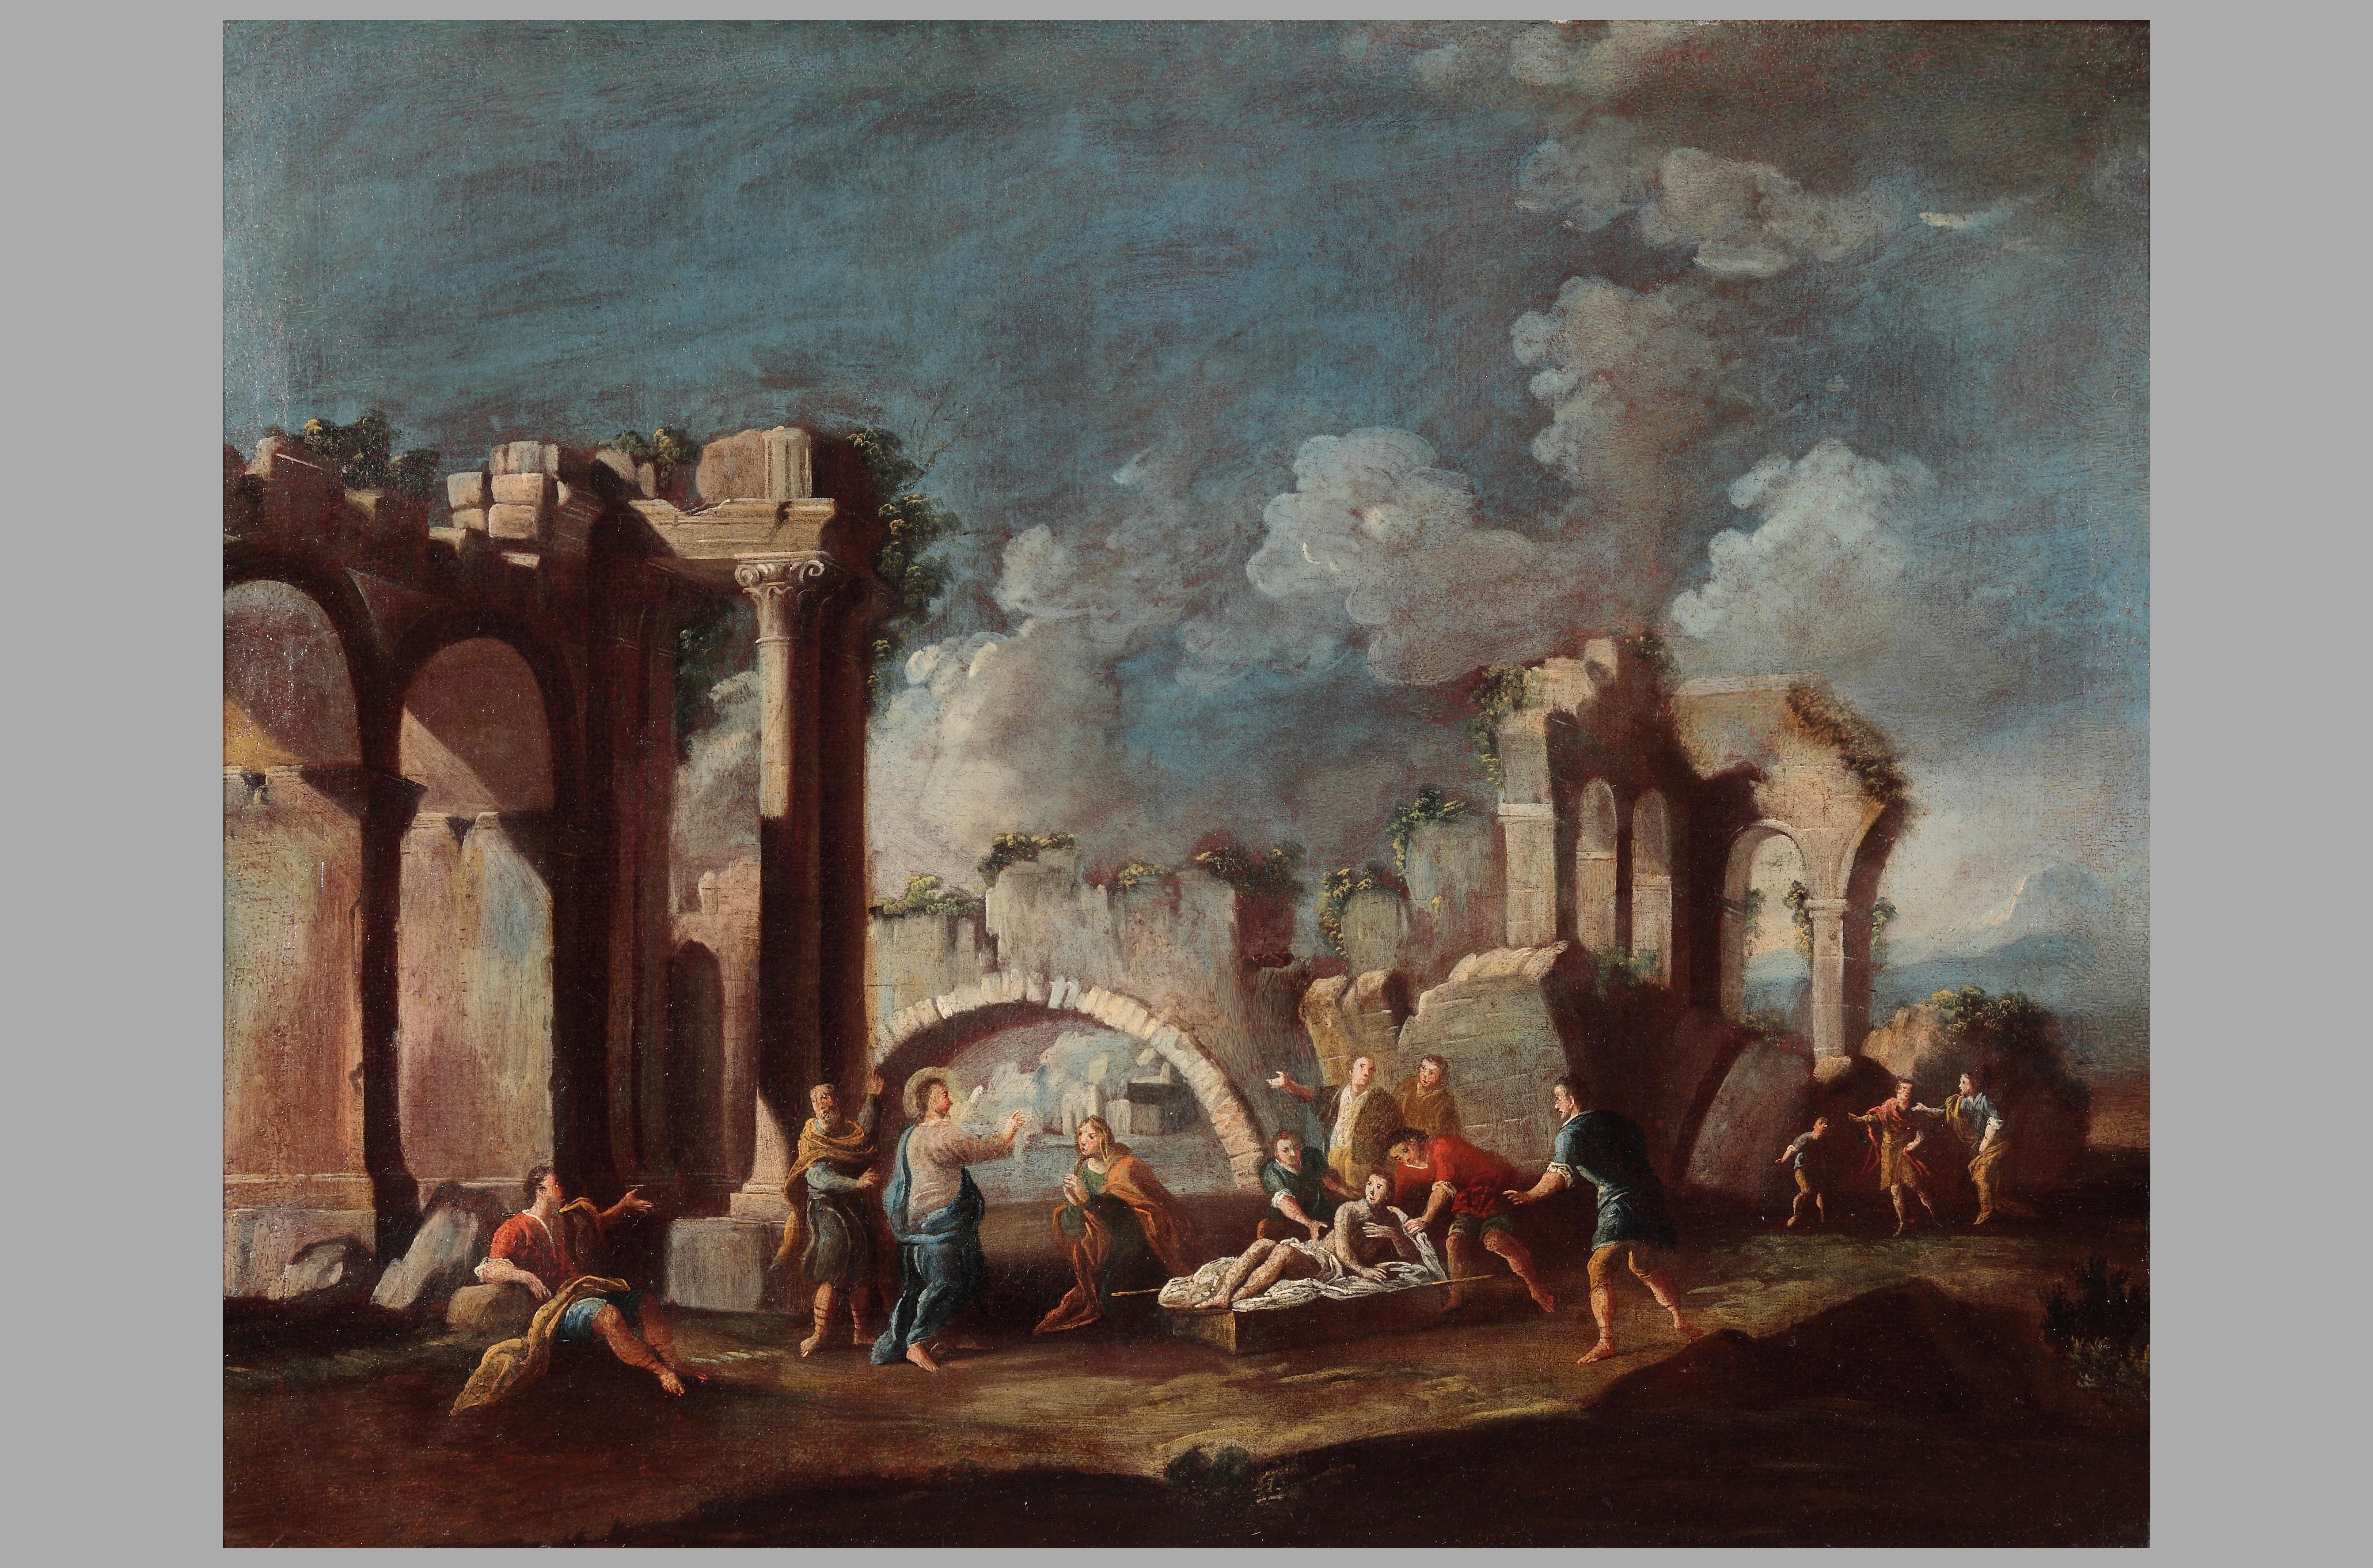 Gutachten von prof. Giancarlo Sestieri.

Vincenzo Re (Parma, 1695 - Neapel?, 1762), geboren in Parma, war ein italienischer Bühnenbildner, der im Laufe seiner Karriere zunächst als Ausstattungsassistent und zuletzt als Chefausstatter am Teatro di